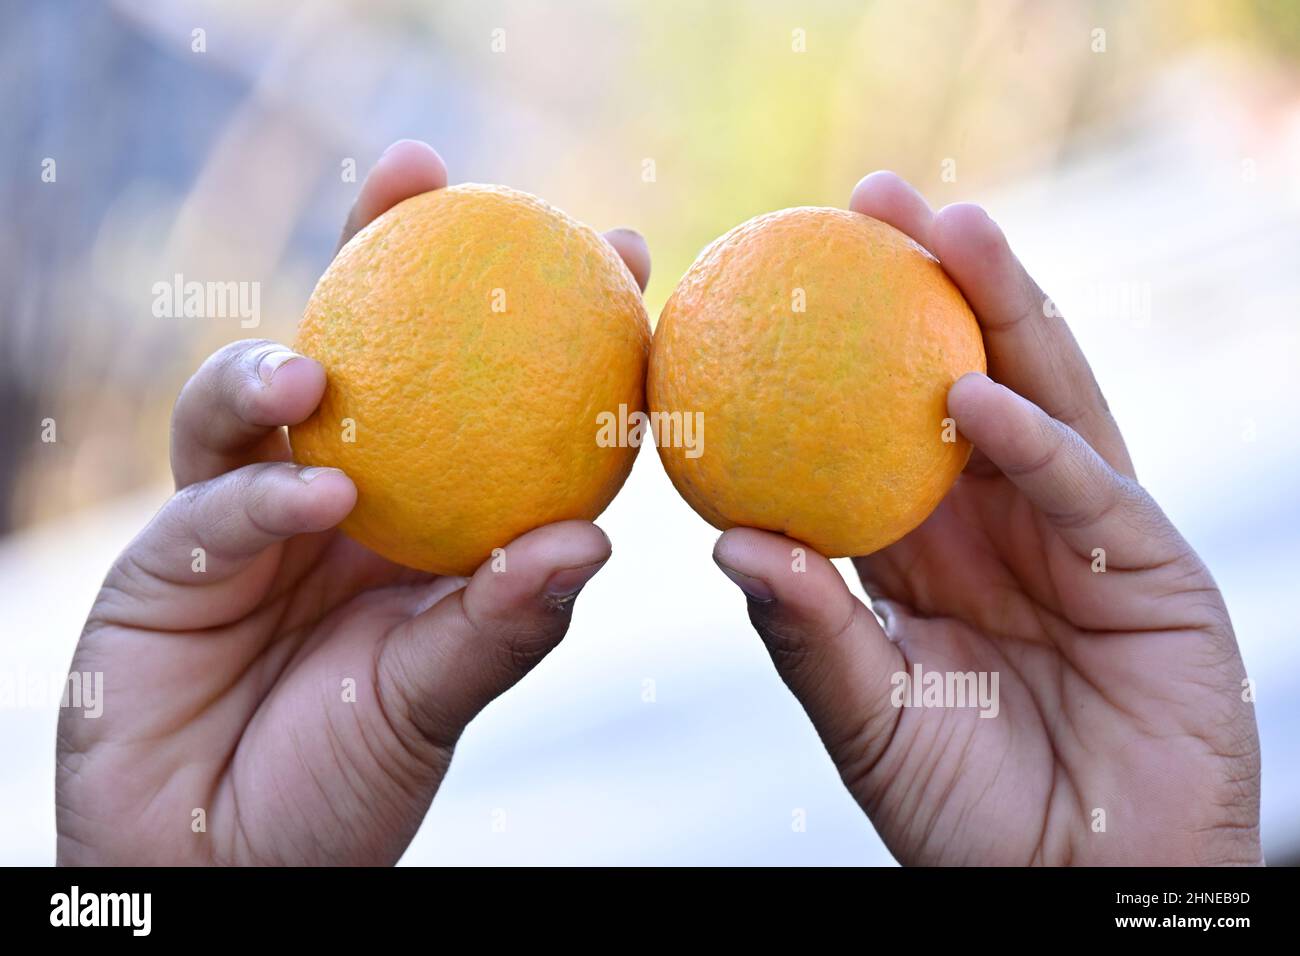 Nahaufnahme das Paar reifer orangefarbener Grapefruits hält die Hand über den gelb-braunen Hintergrund. Stockfoto